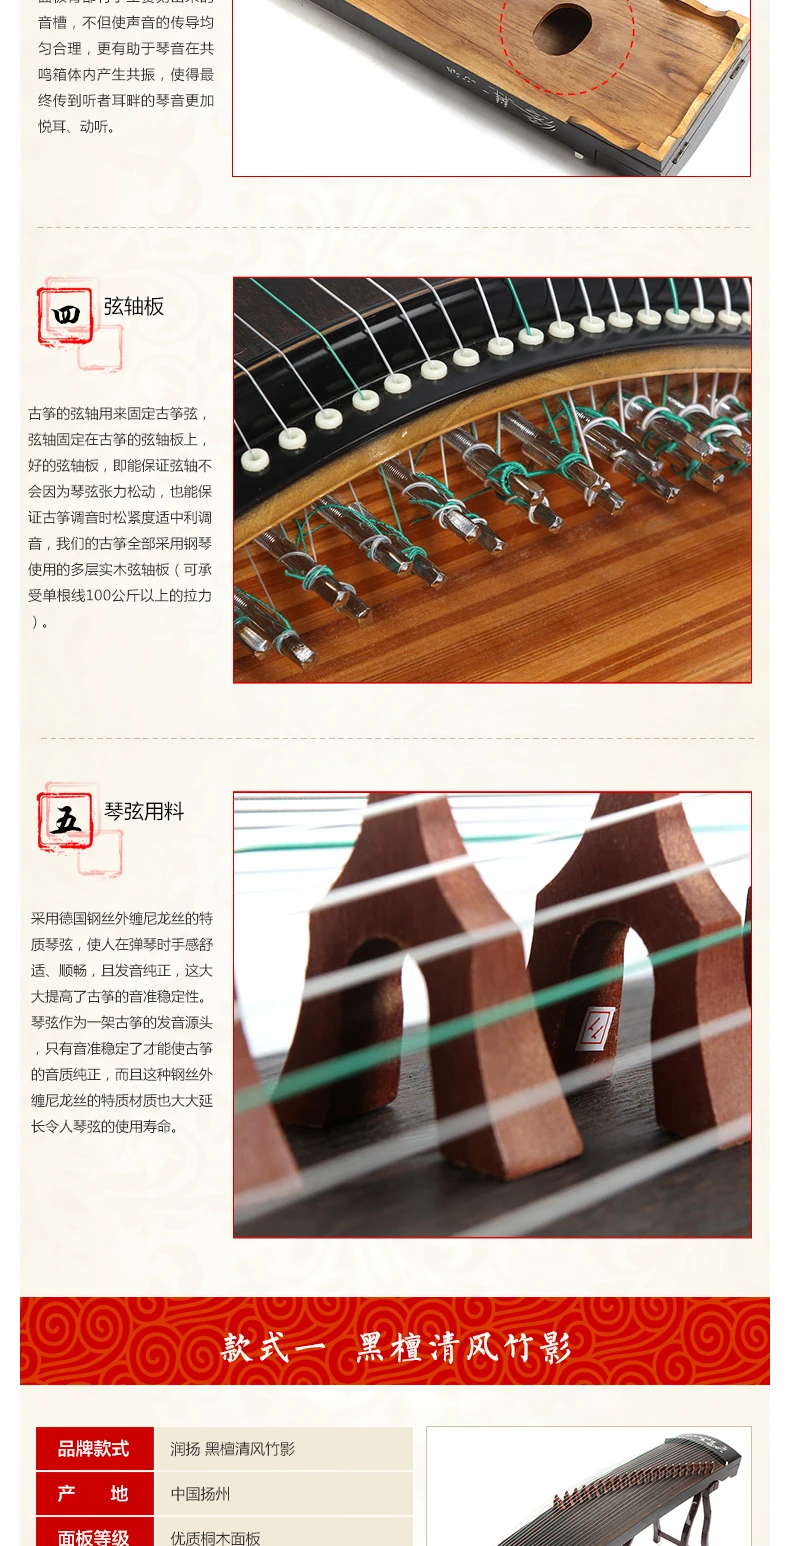 Ветер Бамбуковые Тени серии guzheng 5 моделей дополнительно китайский Yangzhou guzheng 21 струны Zither Музыкальные инструменты